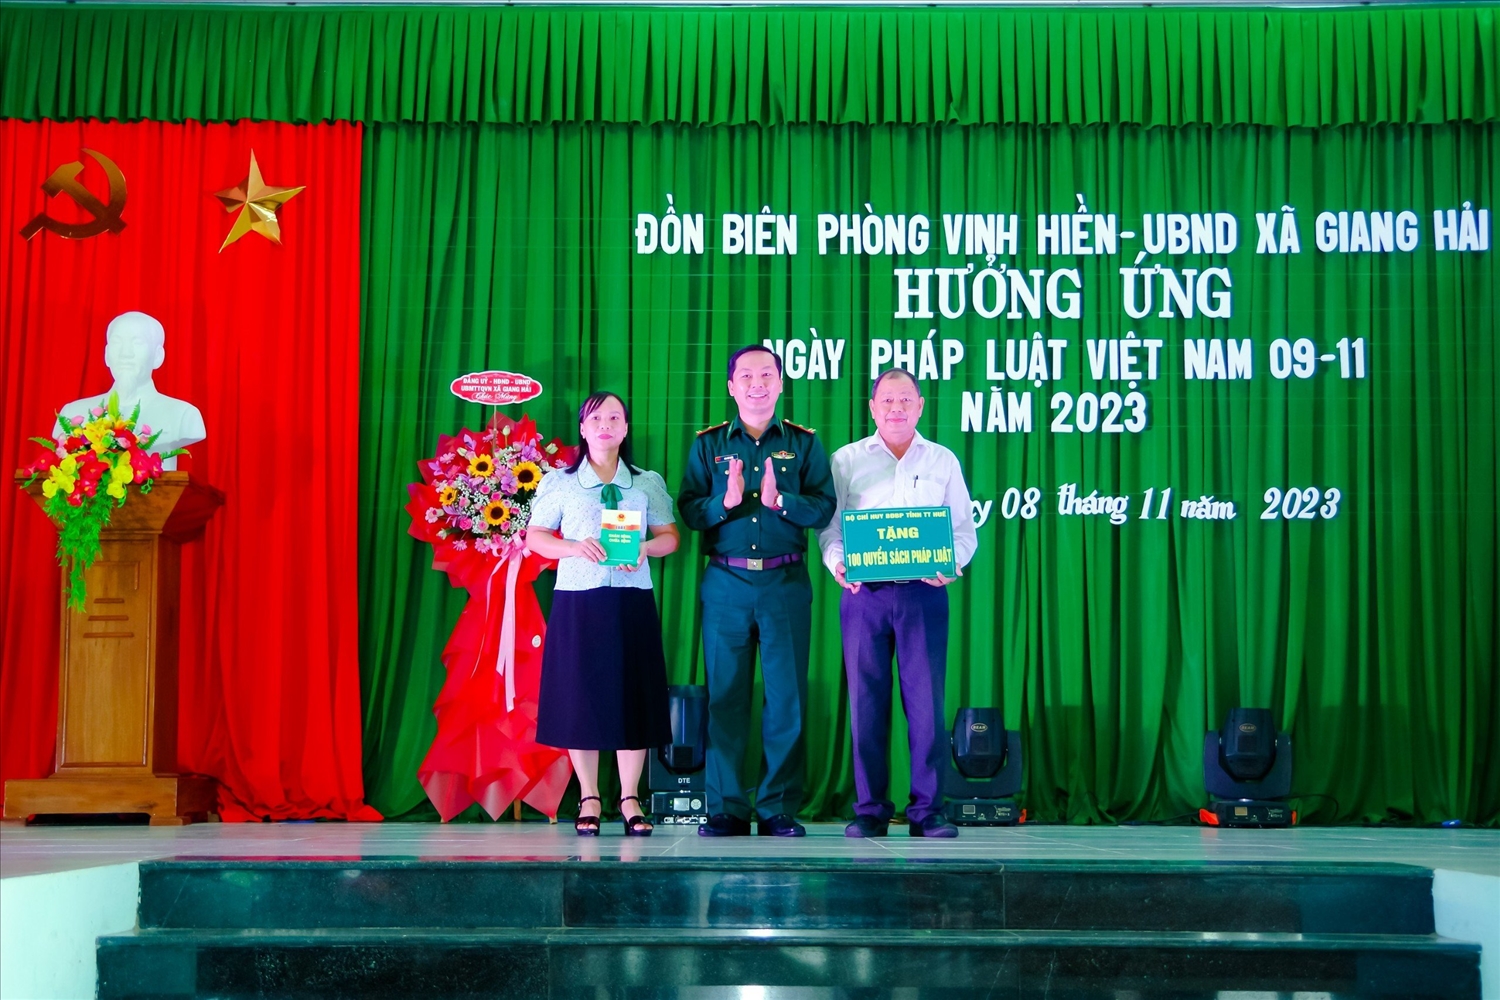  Đại diện Bộ chỉ huy BĐBP tỉnh tặng sách pháp luật cho UBND xã Giang Hải. (Ảnh: Võ Tiến)